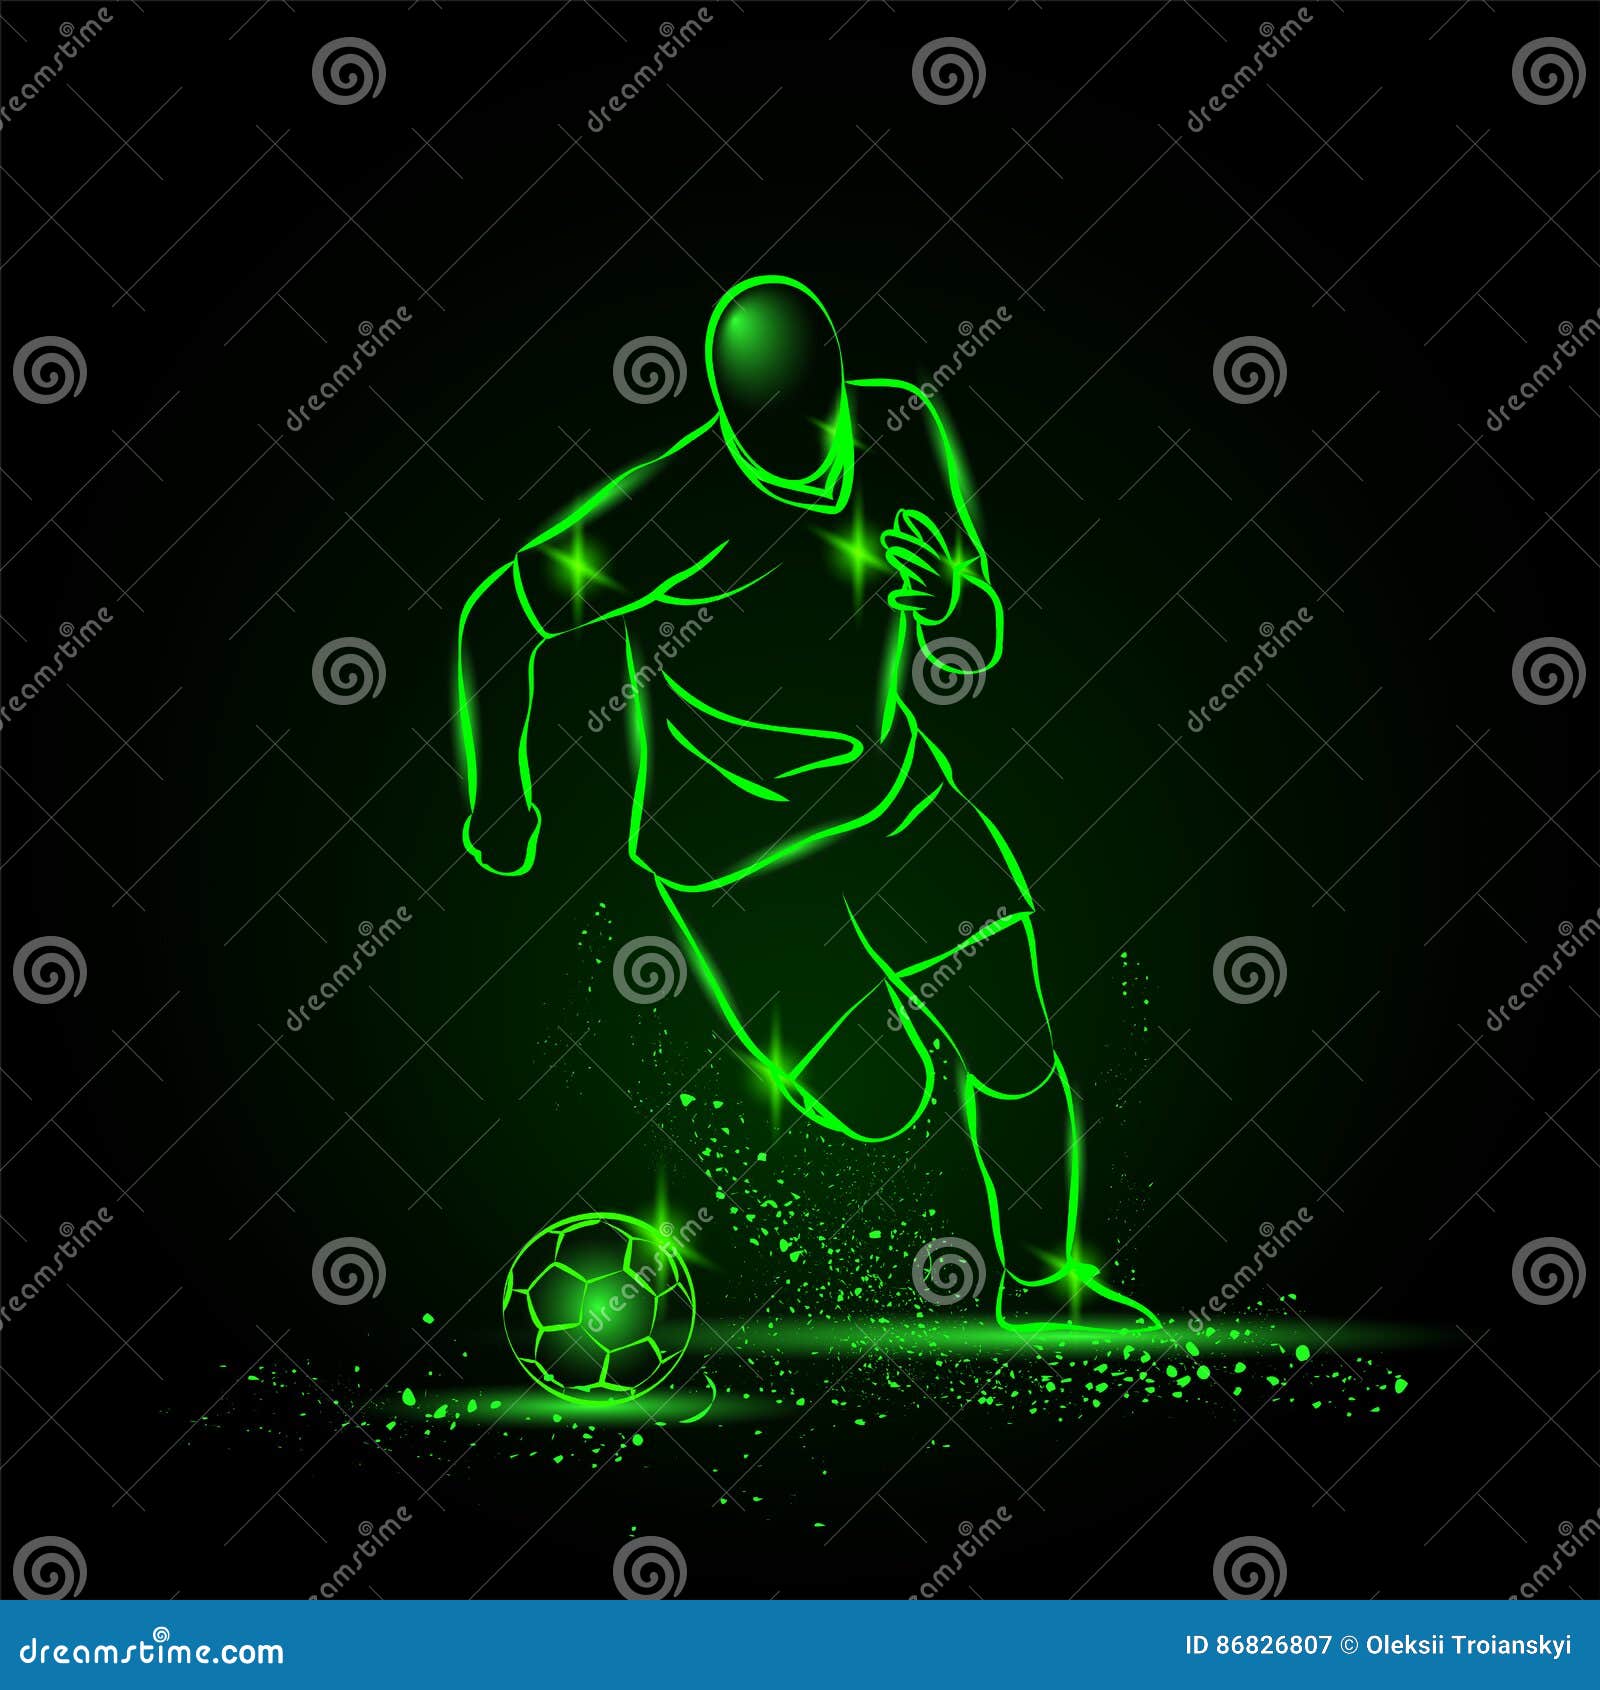 https://thumbs.dreamstime.com/z/dribbling-football-soccer-player-running-ball-neon-style-vector-illustration-86826807.jpg